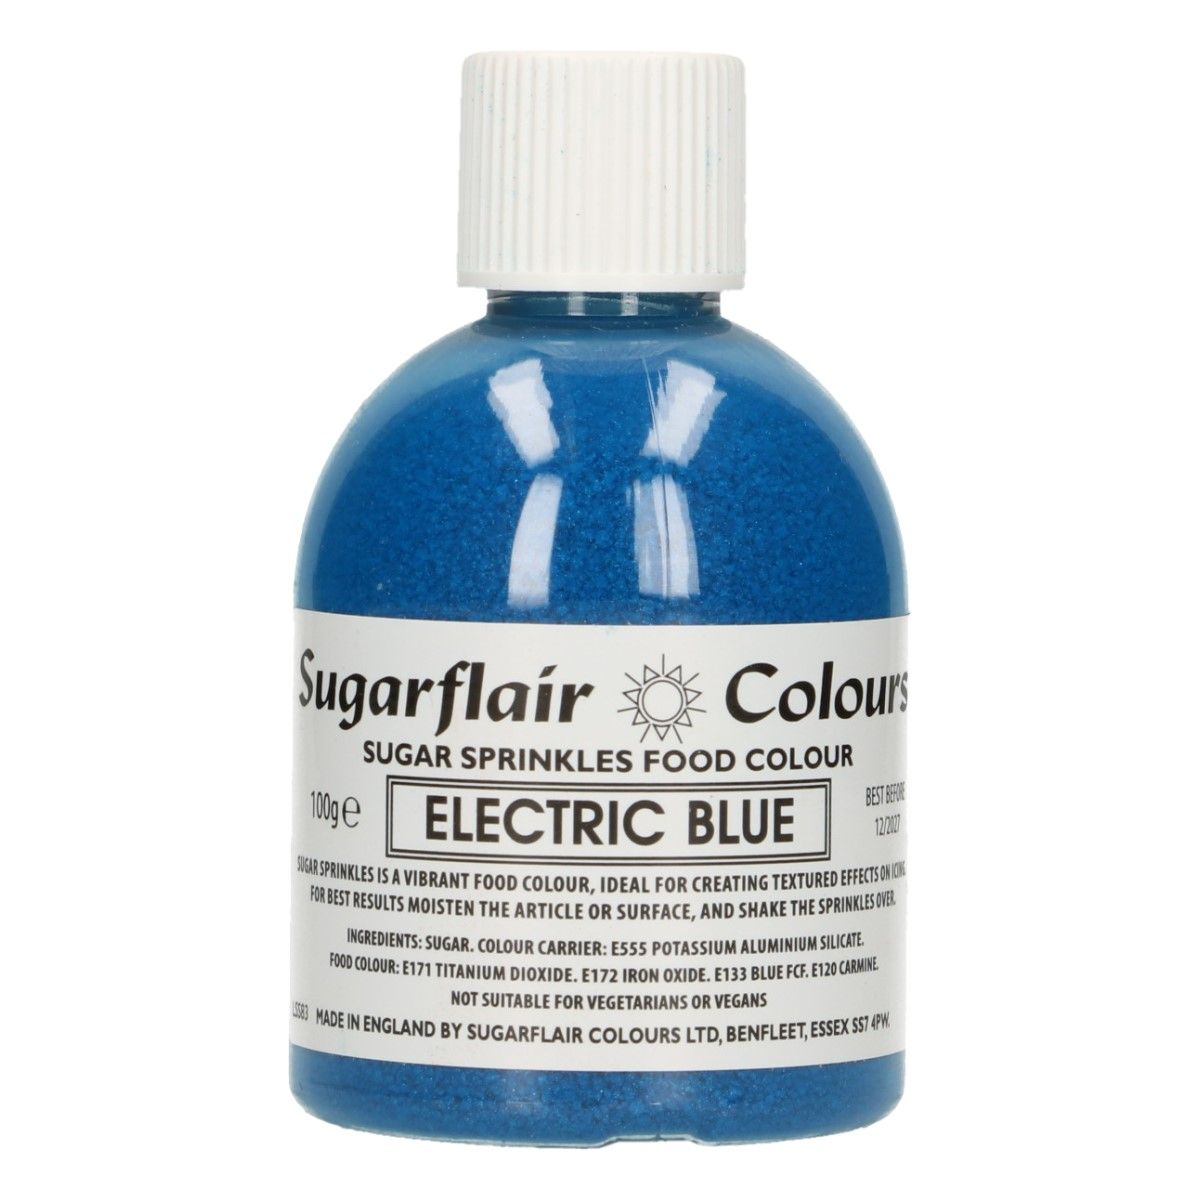 SUGARFLAIR Suckerstaub -ELECTRIC BLUE- 100G